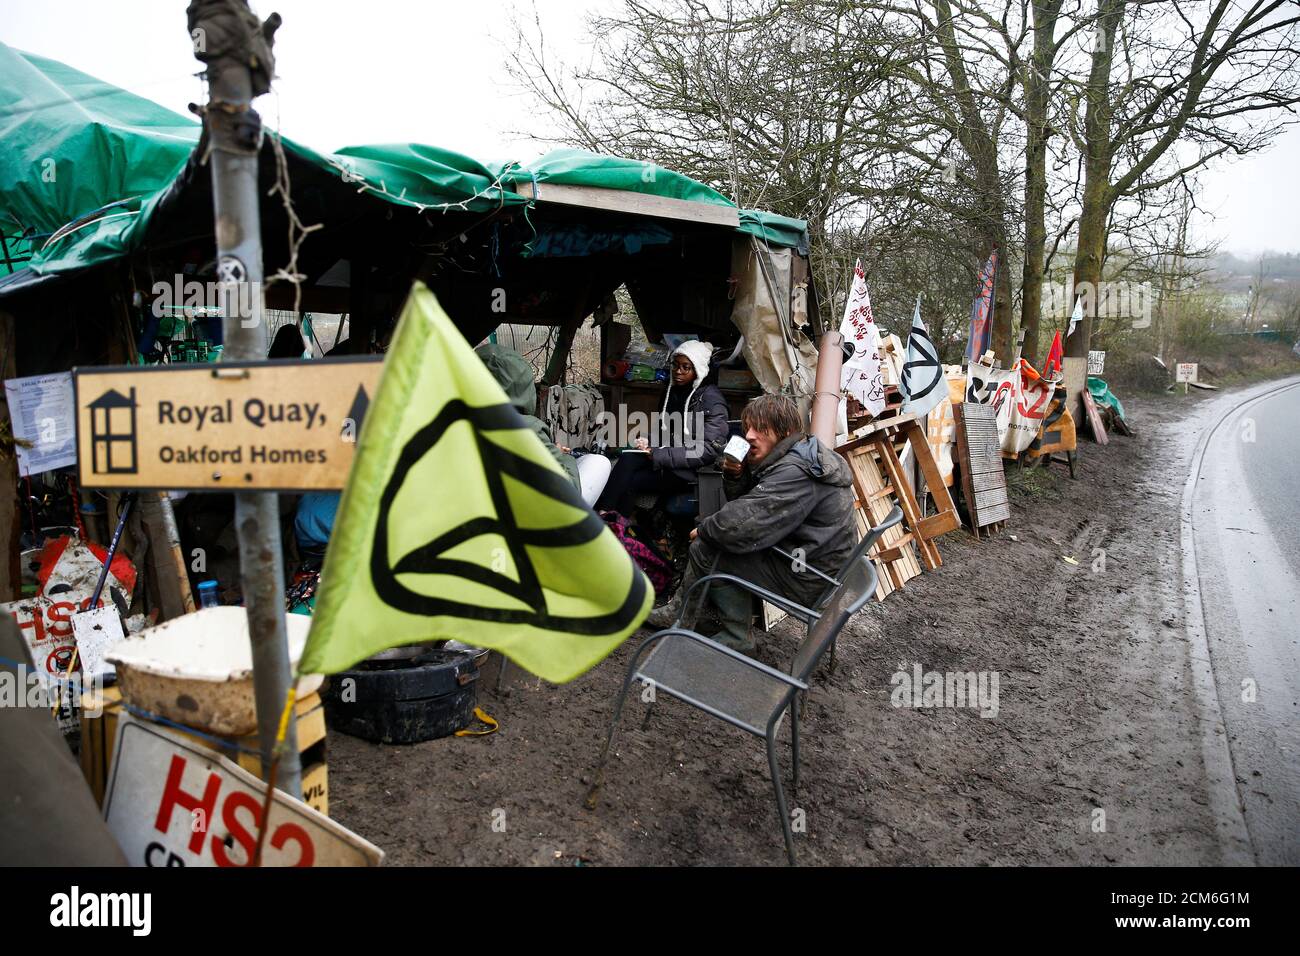 Activistas afiliados a la rebelión de extinción se sientan en un campamento establecido para protestar contra la construcción del ferrocarril HS2 en Harefield, Gran Bretaña, el 22 de enero de 2020. REUTERS/Henry Nicholls Foto de stock